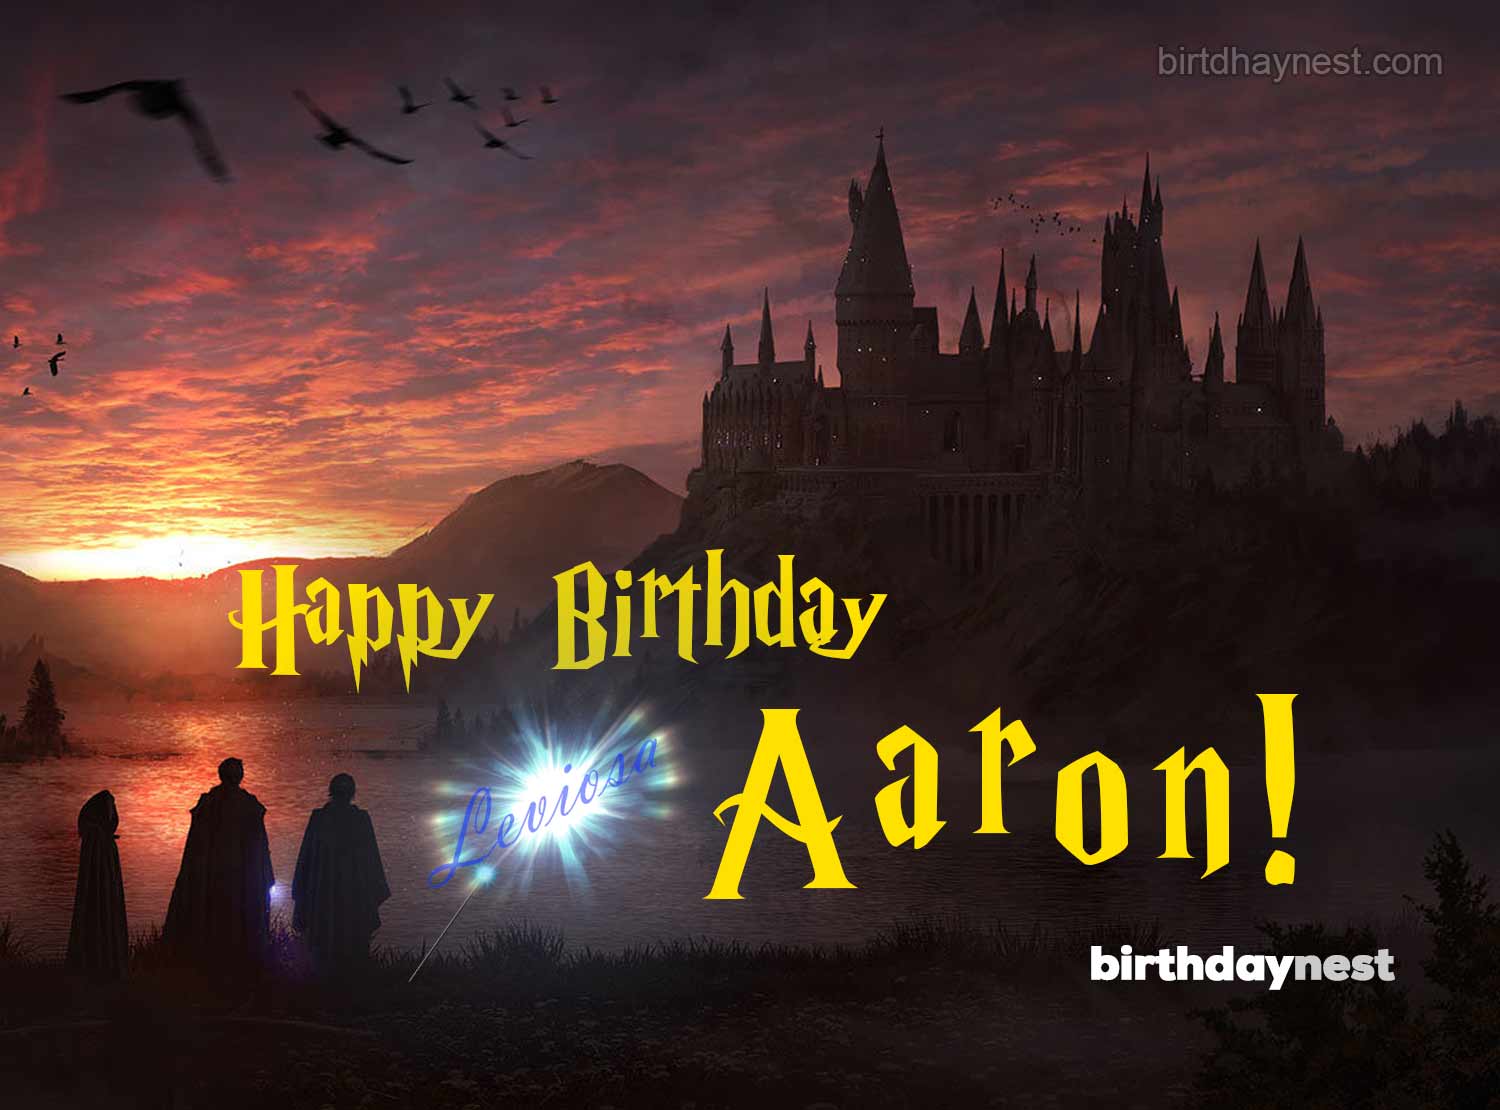 Aaron birthday card